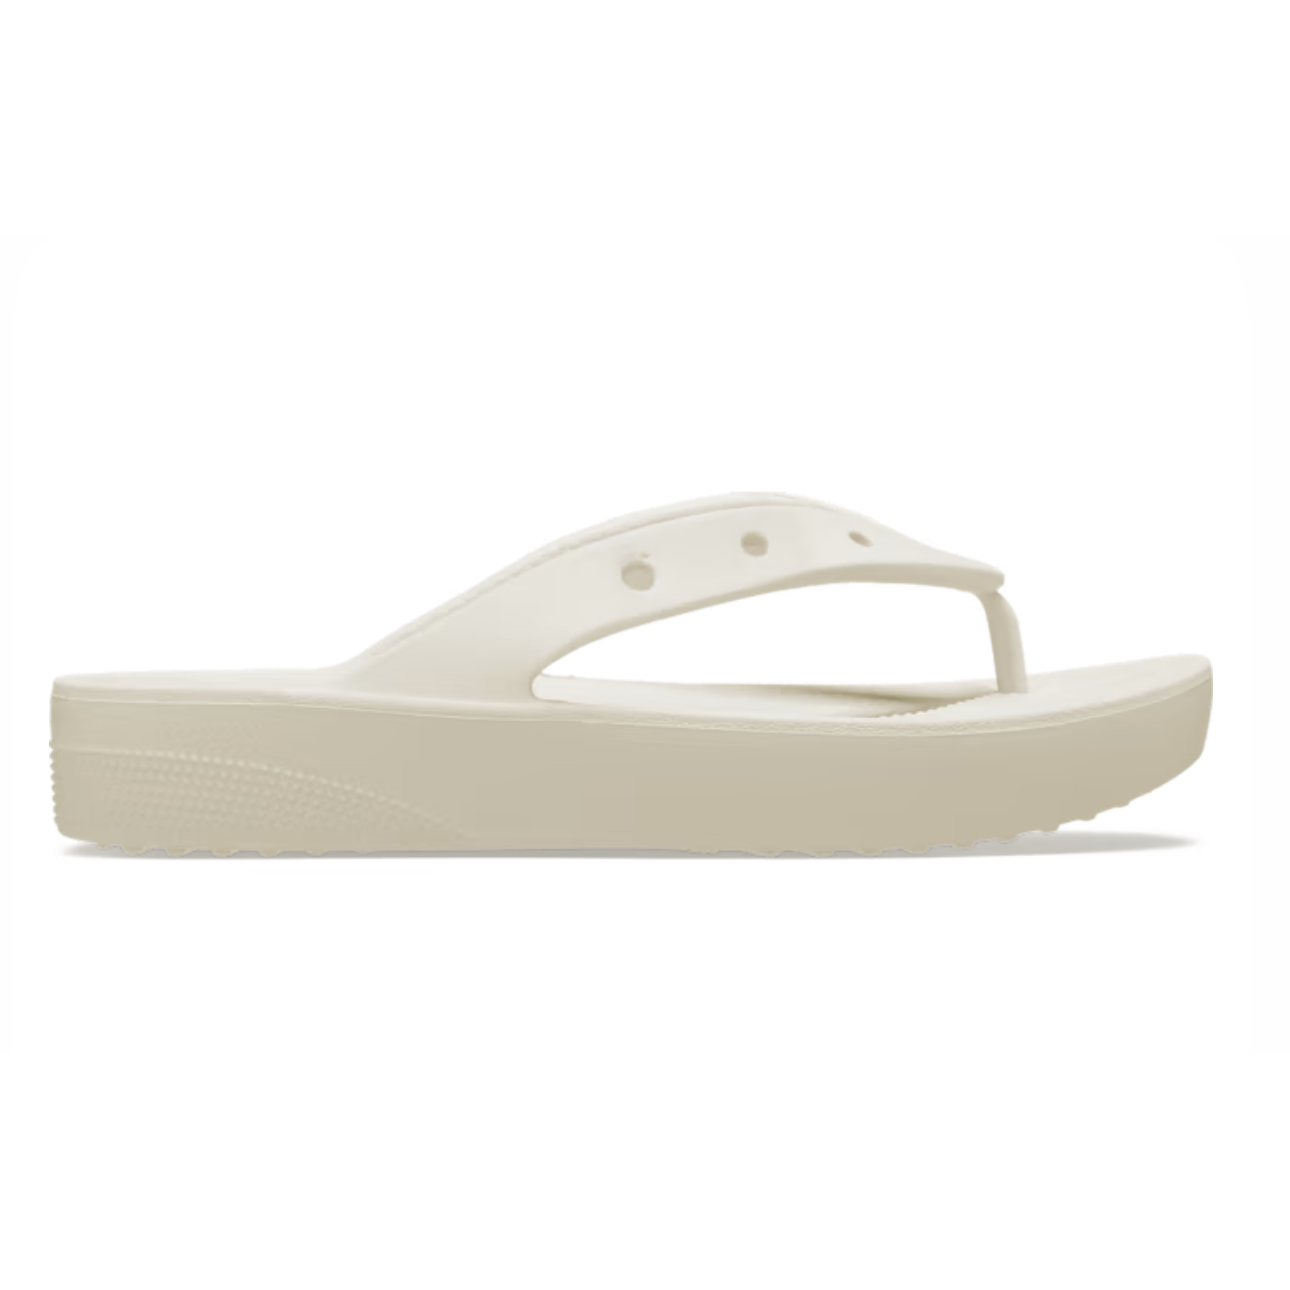 Women's Crocs Classic Platform Flip Flop Sandal Bone